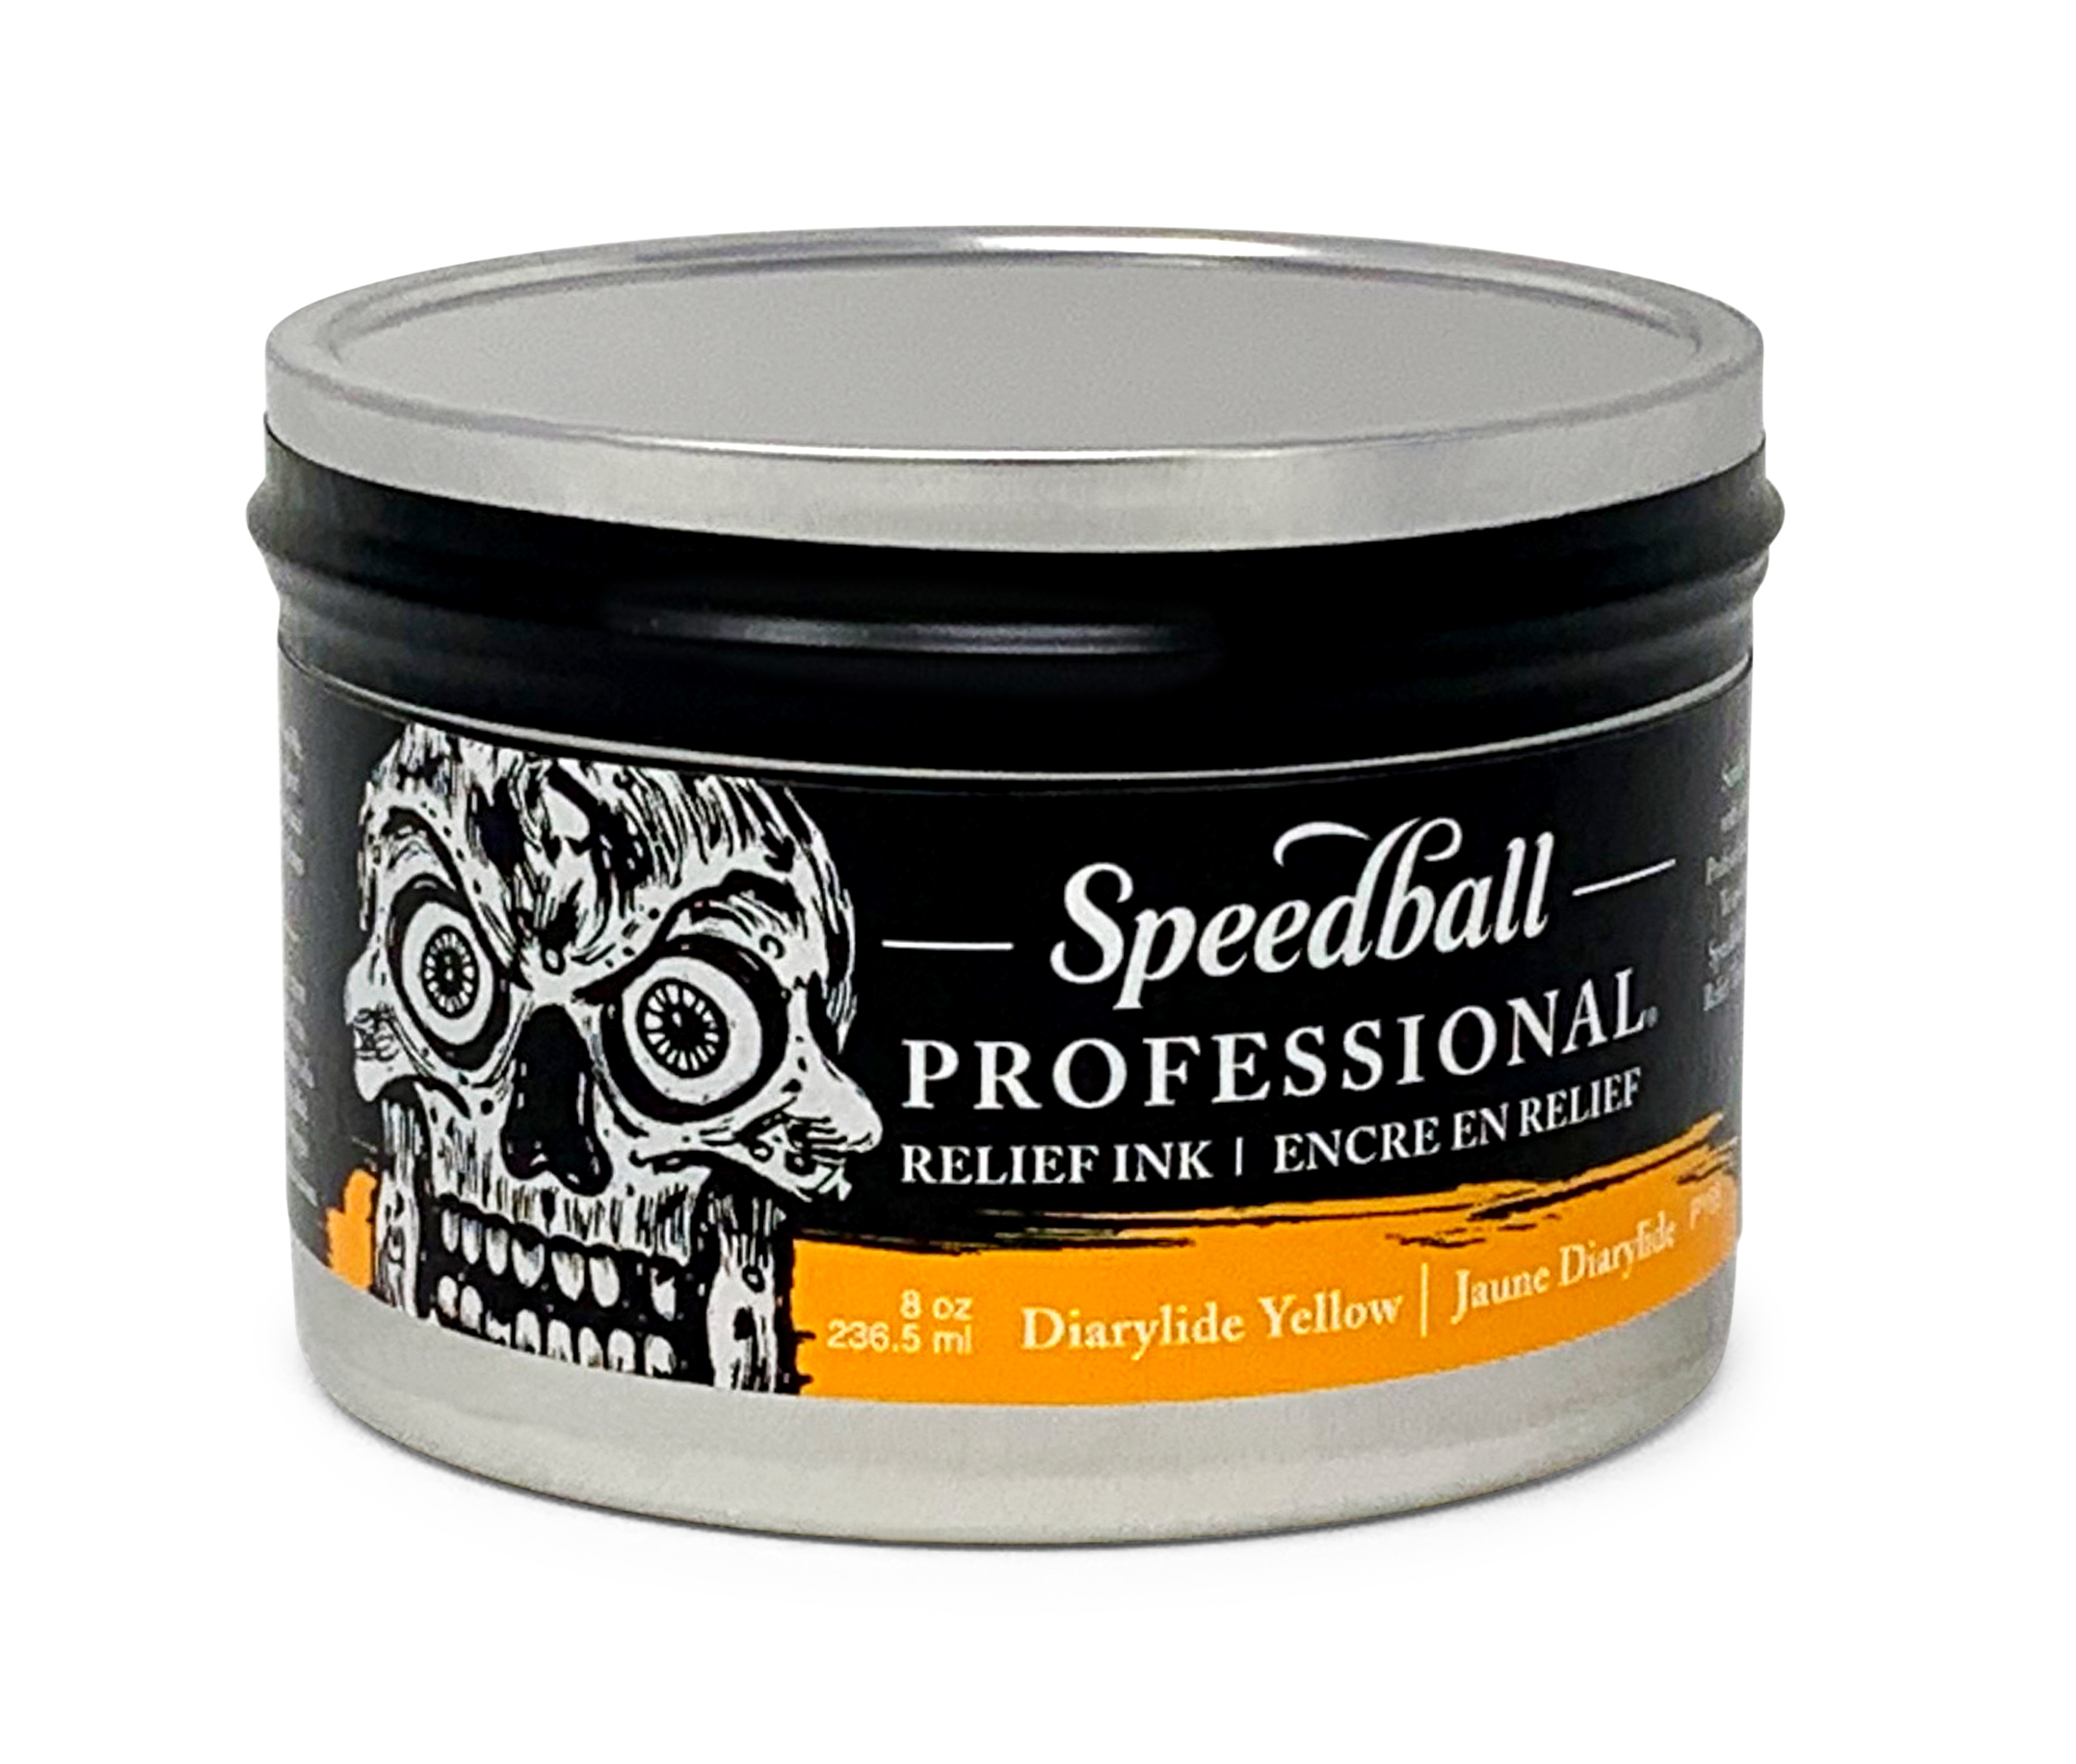 Professional® Relief Inks - Speedball Art